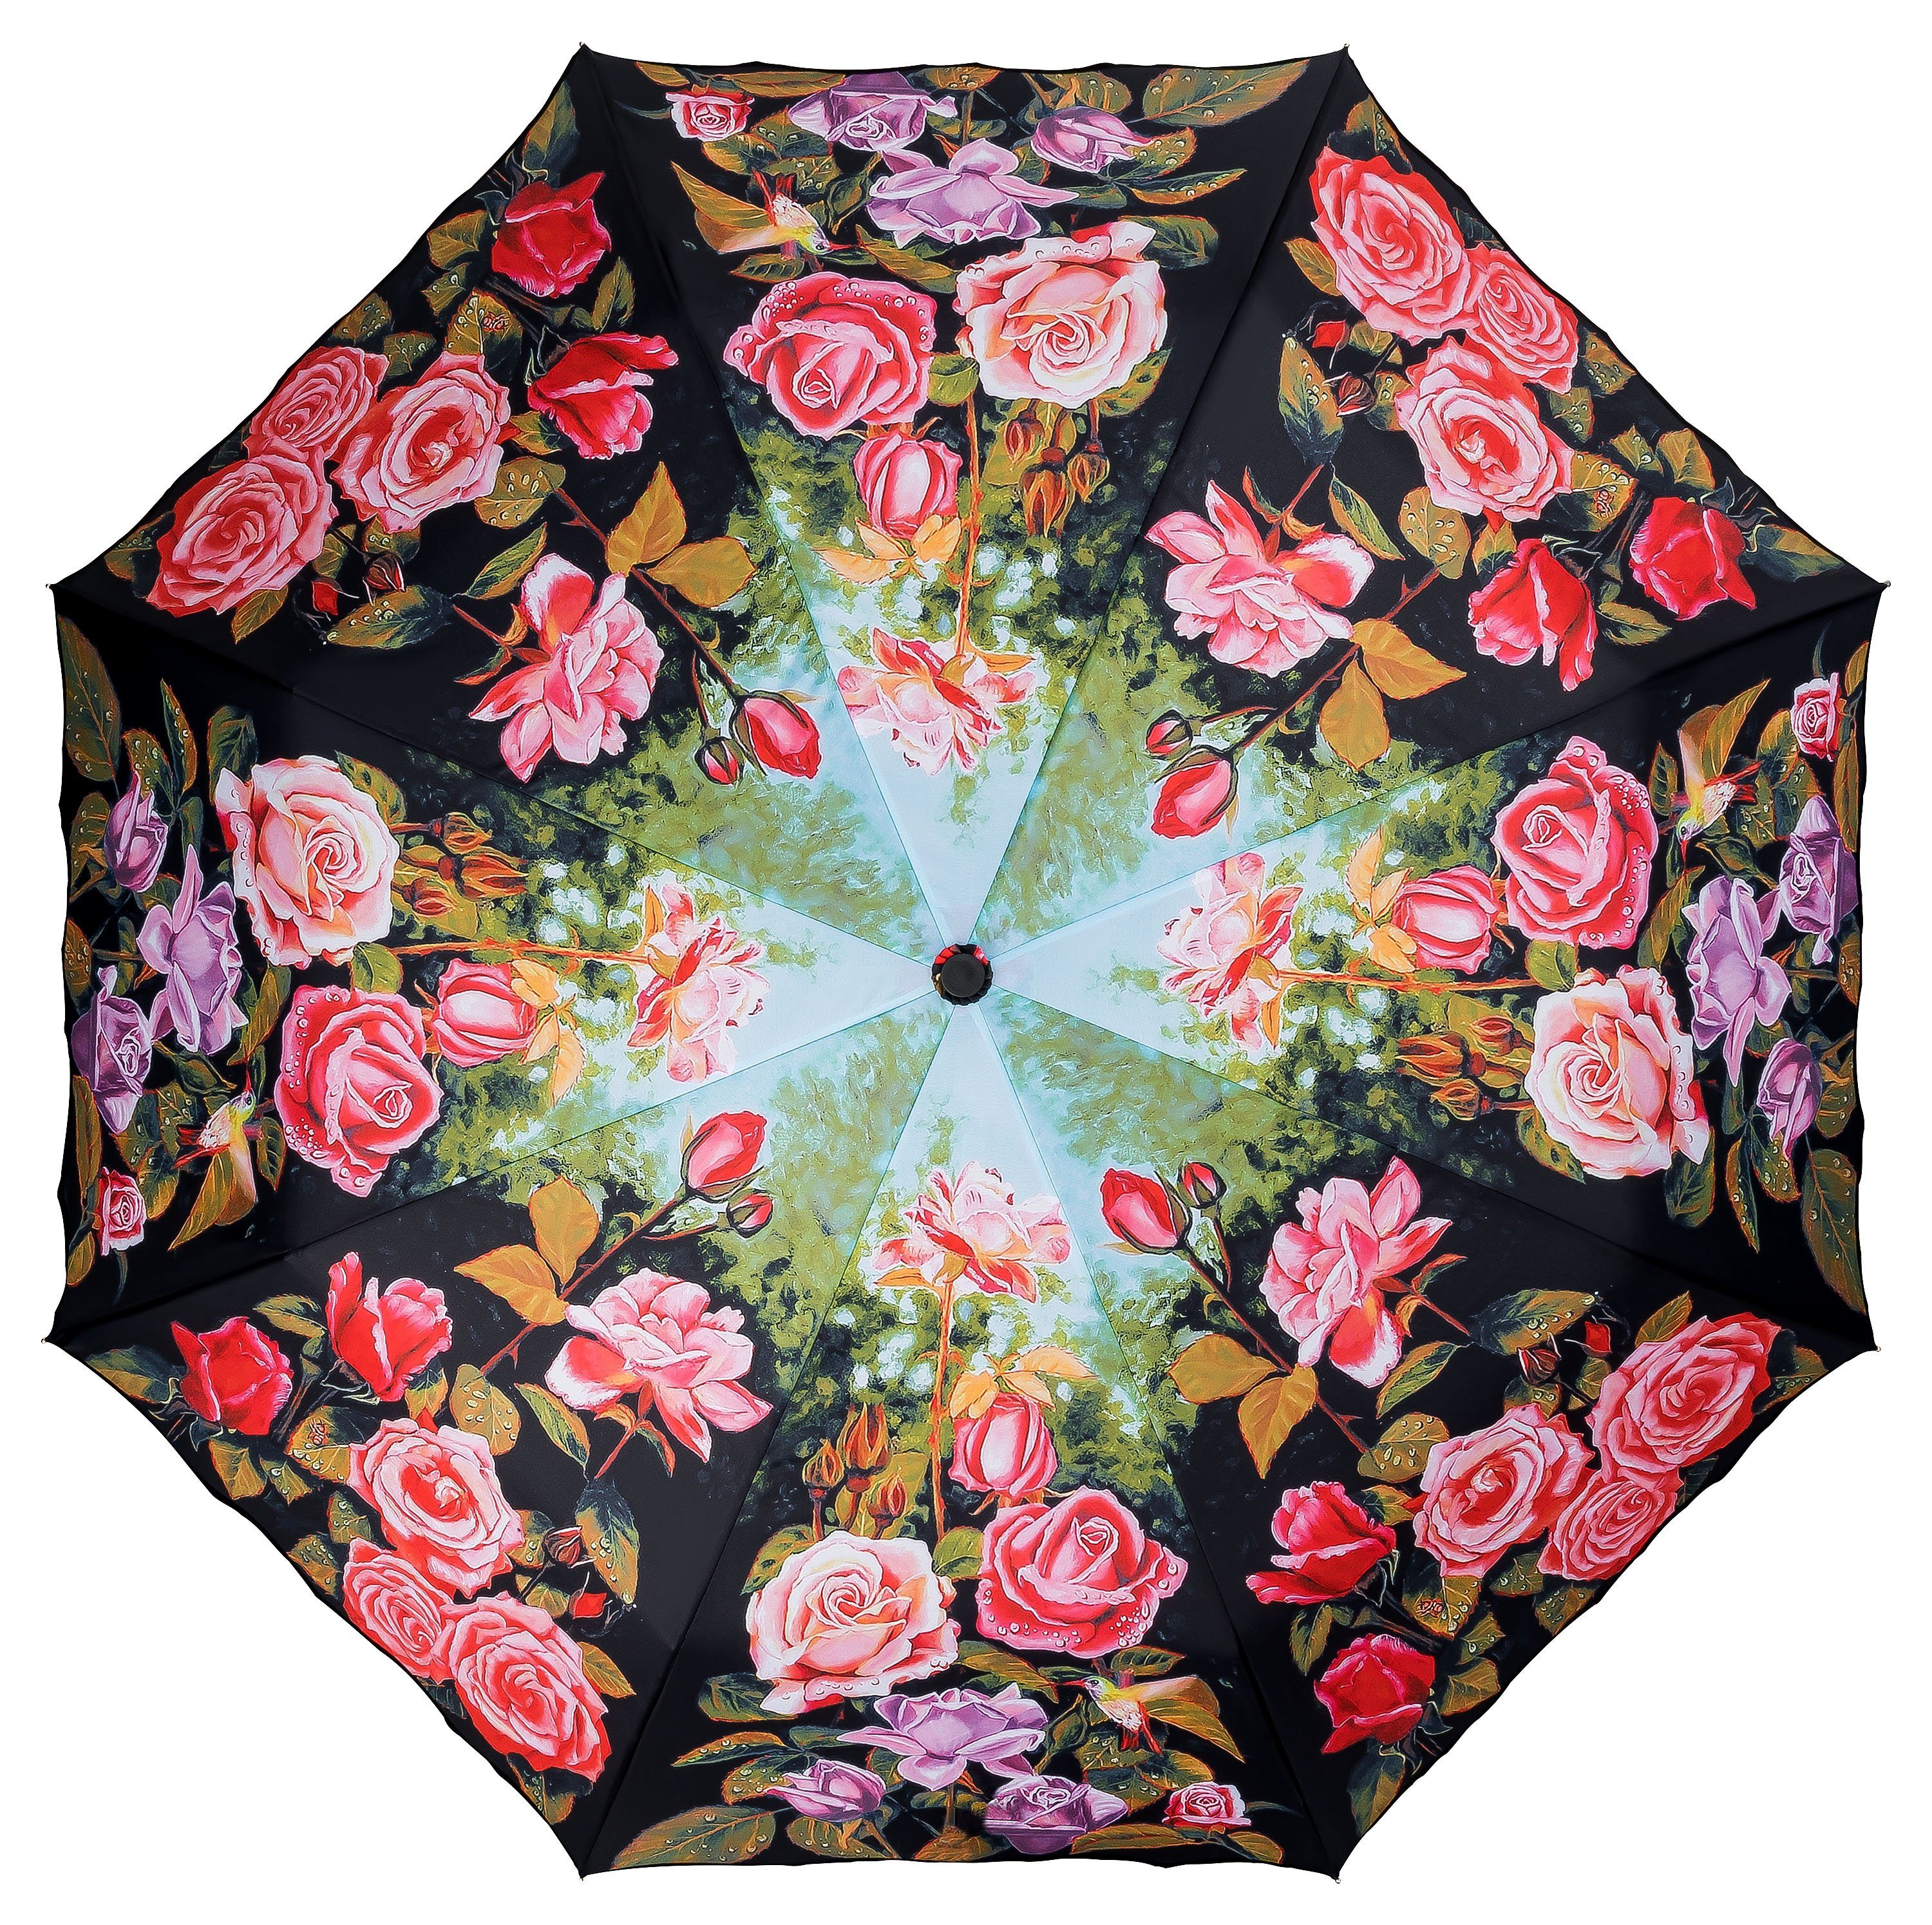 von Lilienfeld Leicht Motivschirm Wellenkante Taschenregenschirm Rosen Blüten Blumen Garten Stabil